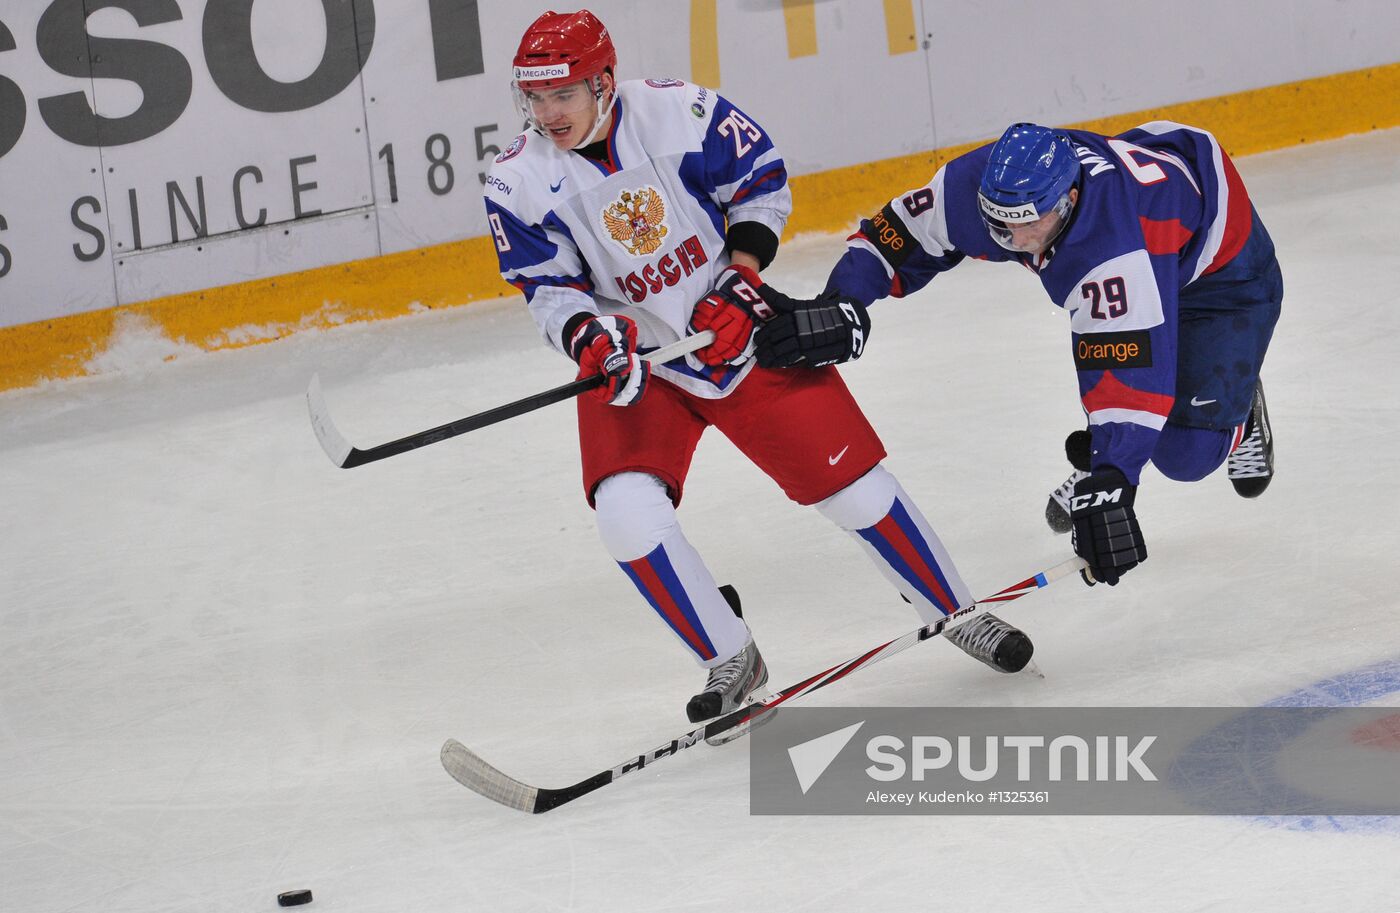 2013 World Junior Ice Hockey Championships. Russia vs. Slovakia